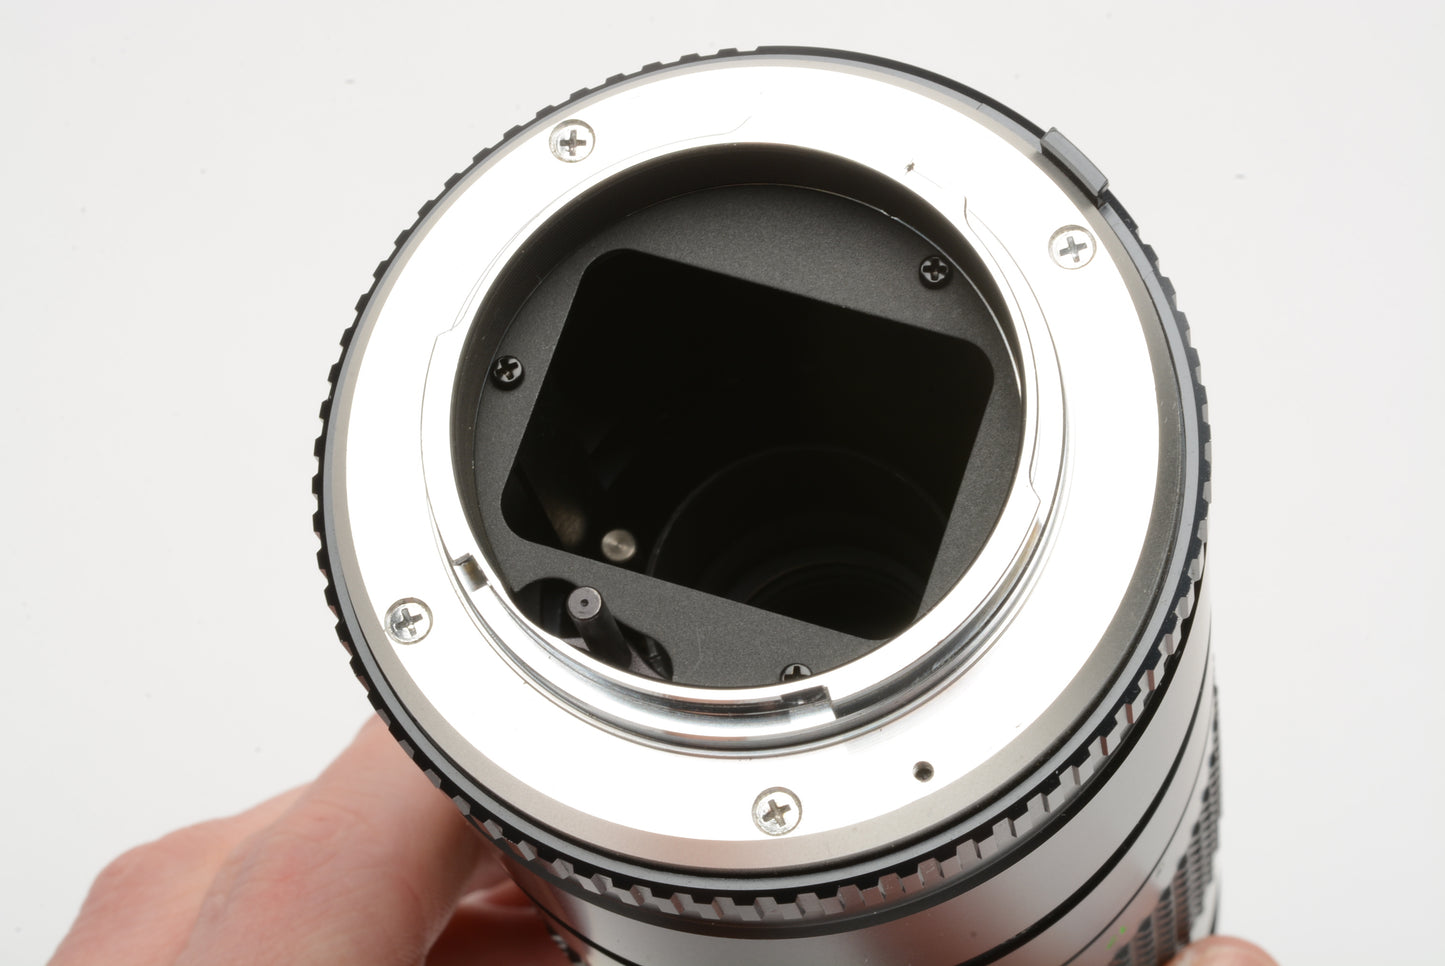 Minolta MC Tele Rokkor-X 300mm f5.6 Tele lens, caps, case, clean and sharp